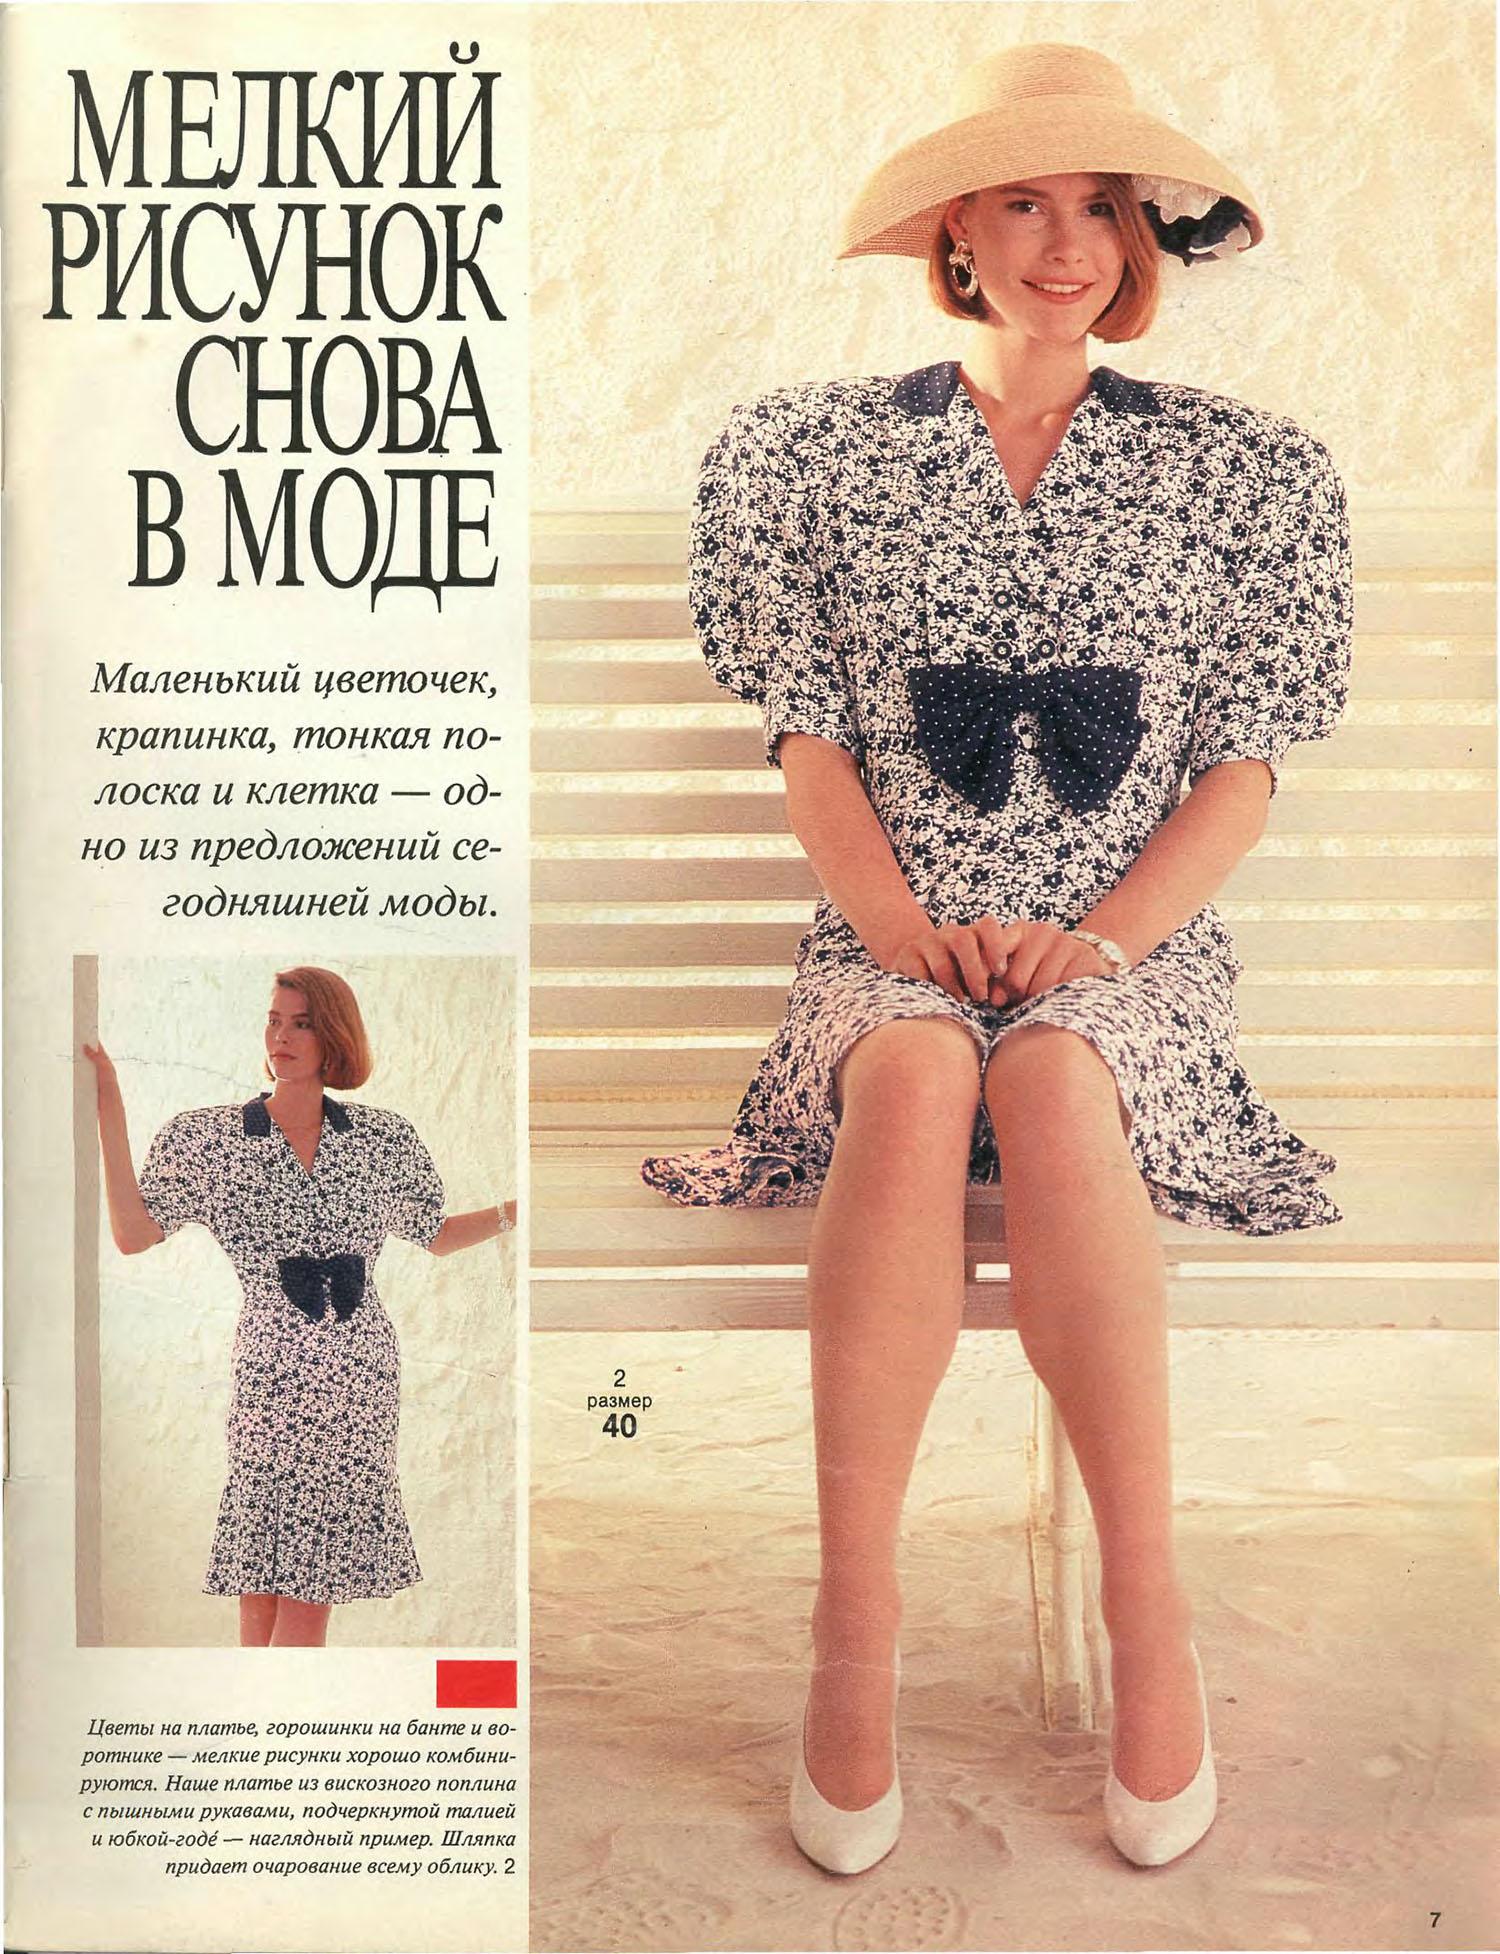 Soviétique de la Mode: le Style des Pages à partir des années 1980 URSS.